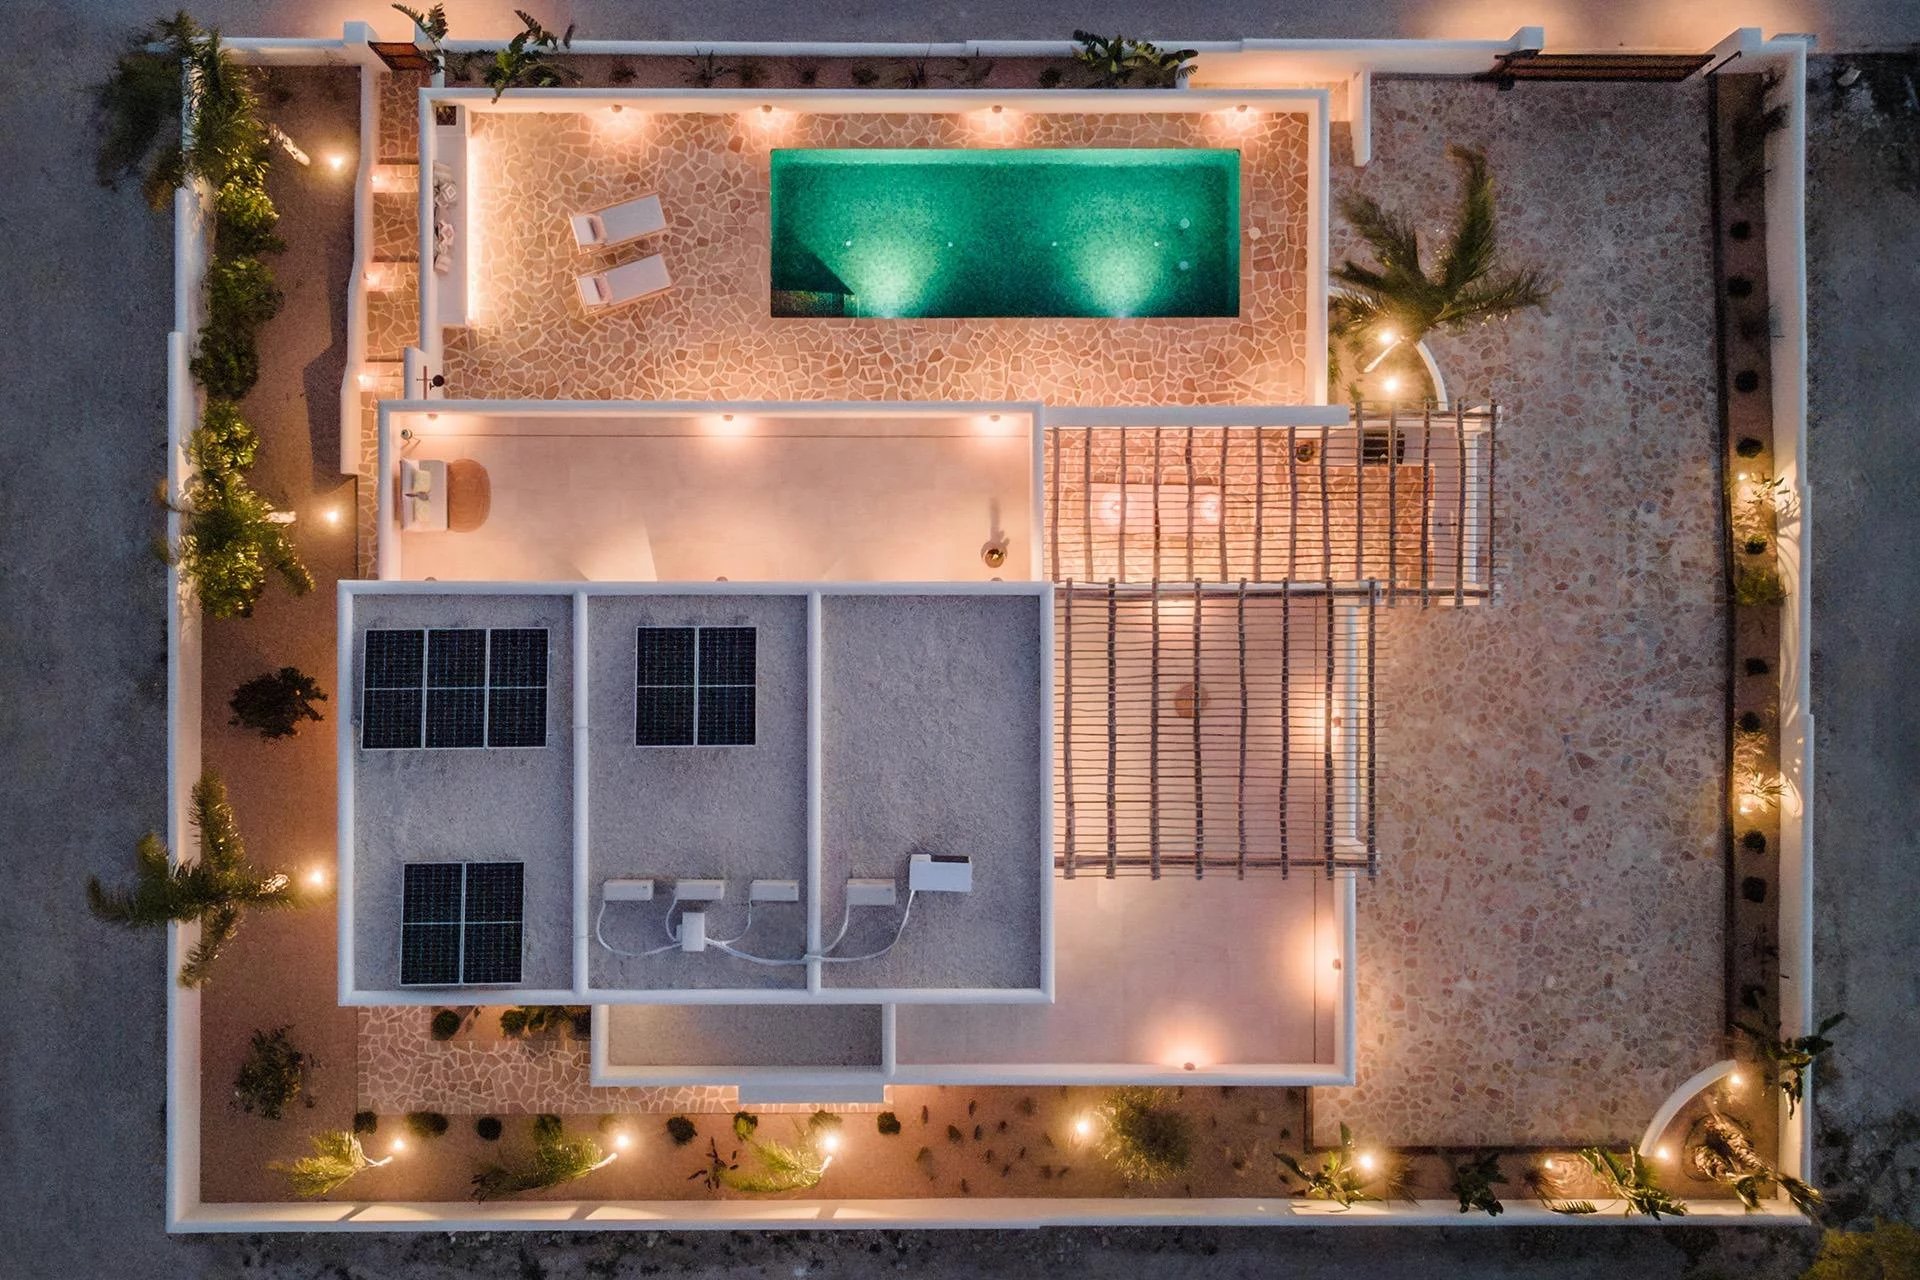 Villa de style Ibiza prête à l'emploi avec vue sur la mer à Moraira